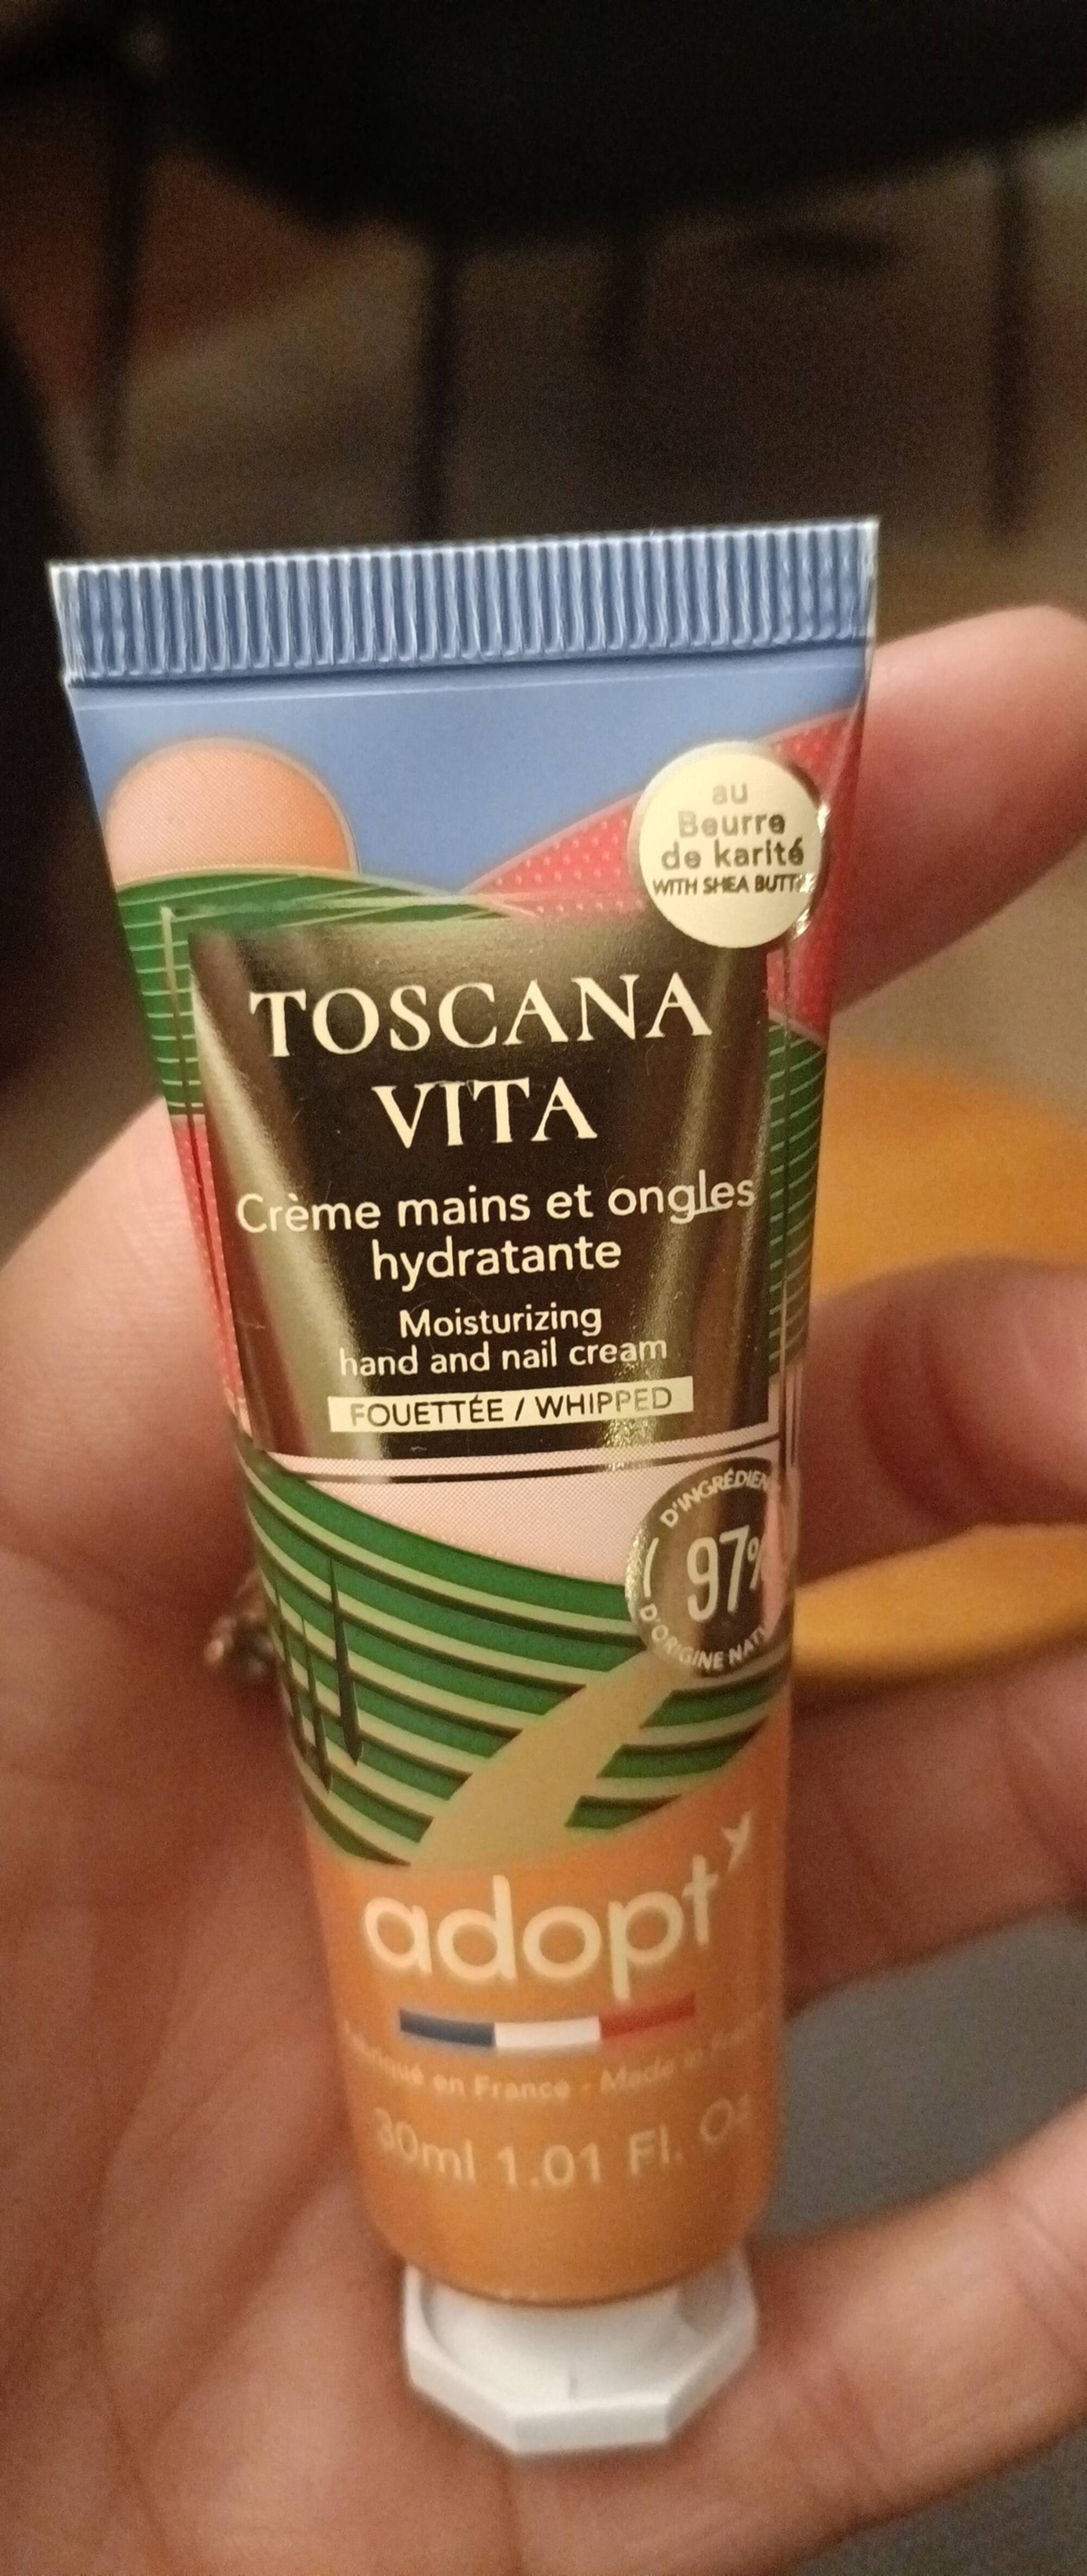 ADOPT' - Toscana vita - Crème mains et ongles hydratante